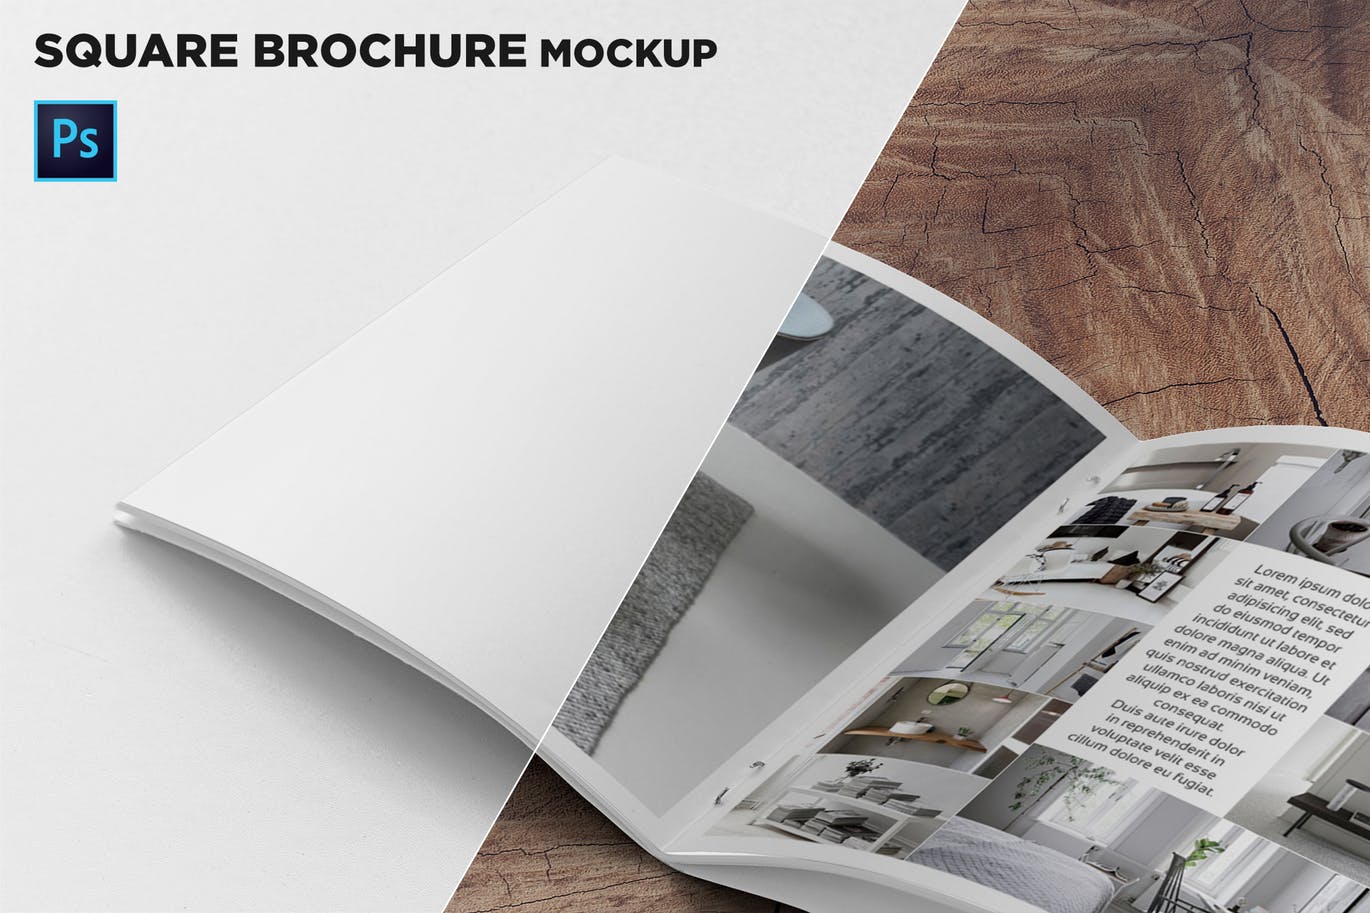 方形画册产品手册左页特写效果图样机大洋岛精选 Square Brochure Mockup Closeup on Left Page插图